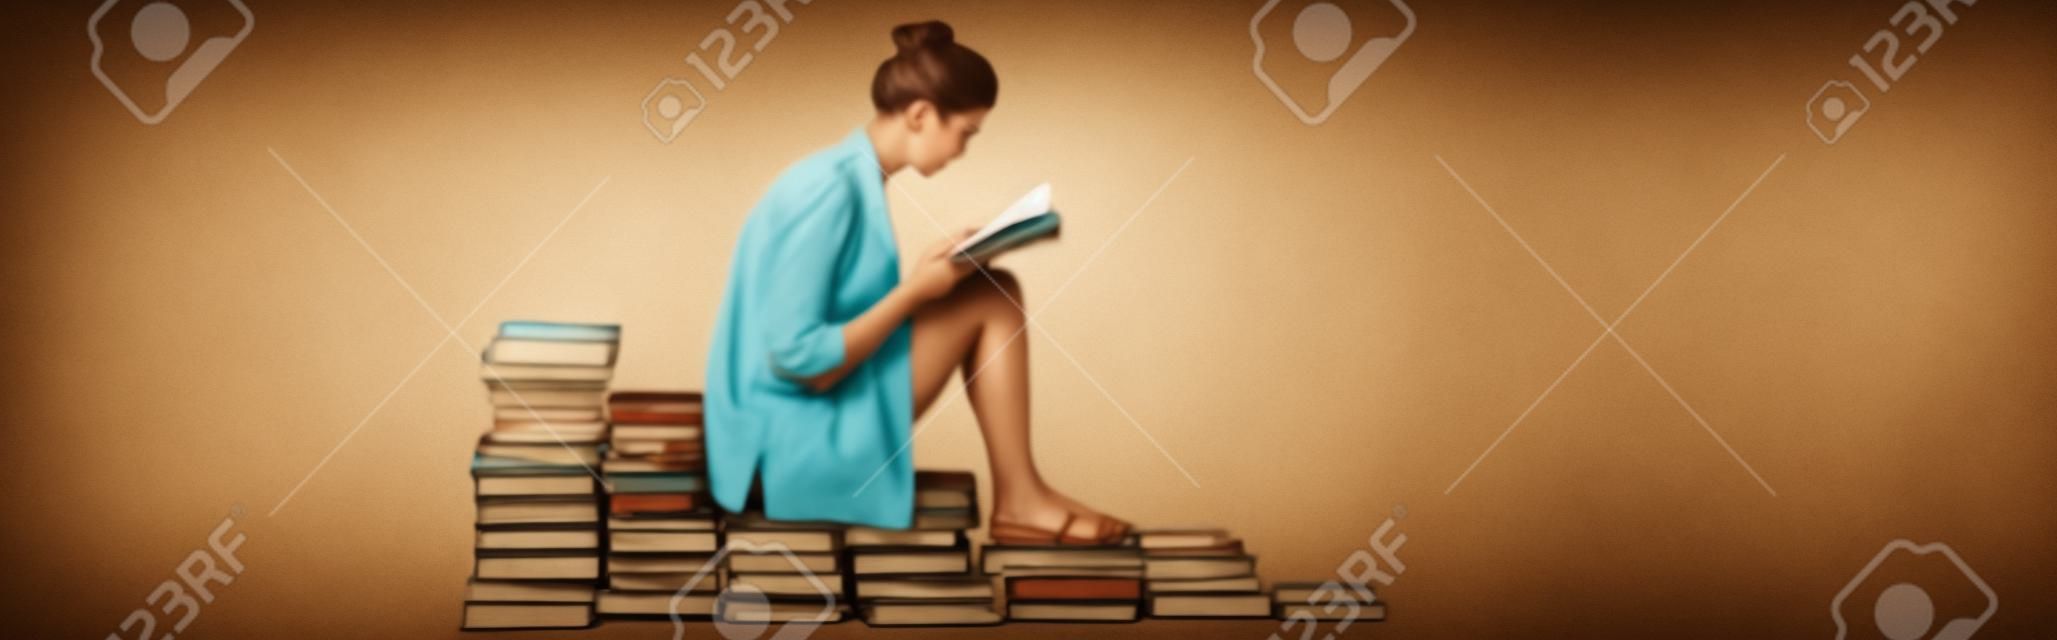 Seitenansicht einer jungen Frau in Sandalen, die liest, während sie auf einem Stapel Bücher auf Weiß sitzt, Banner